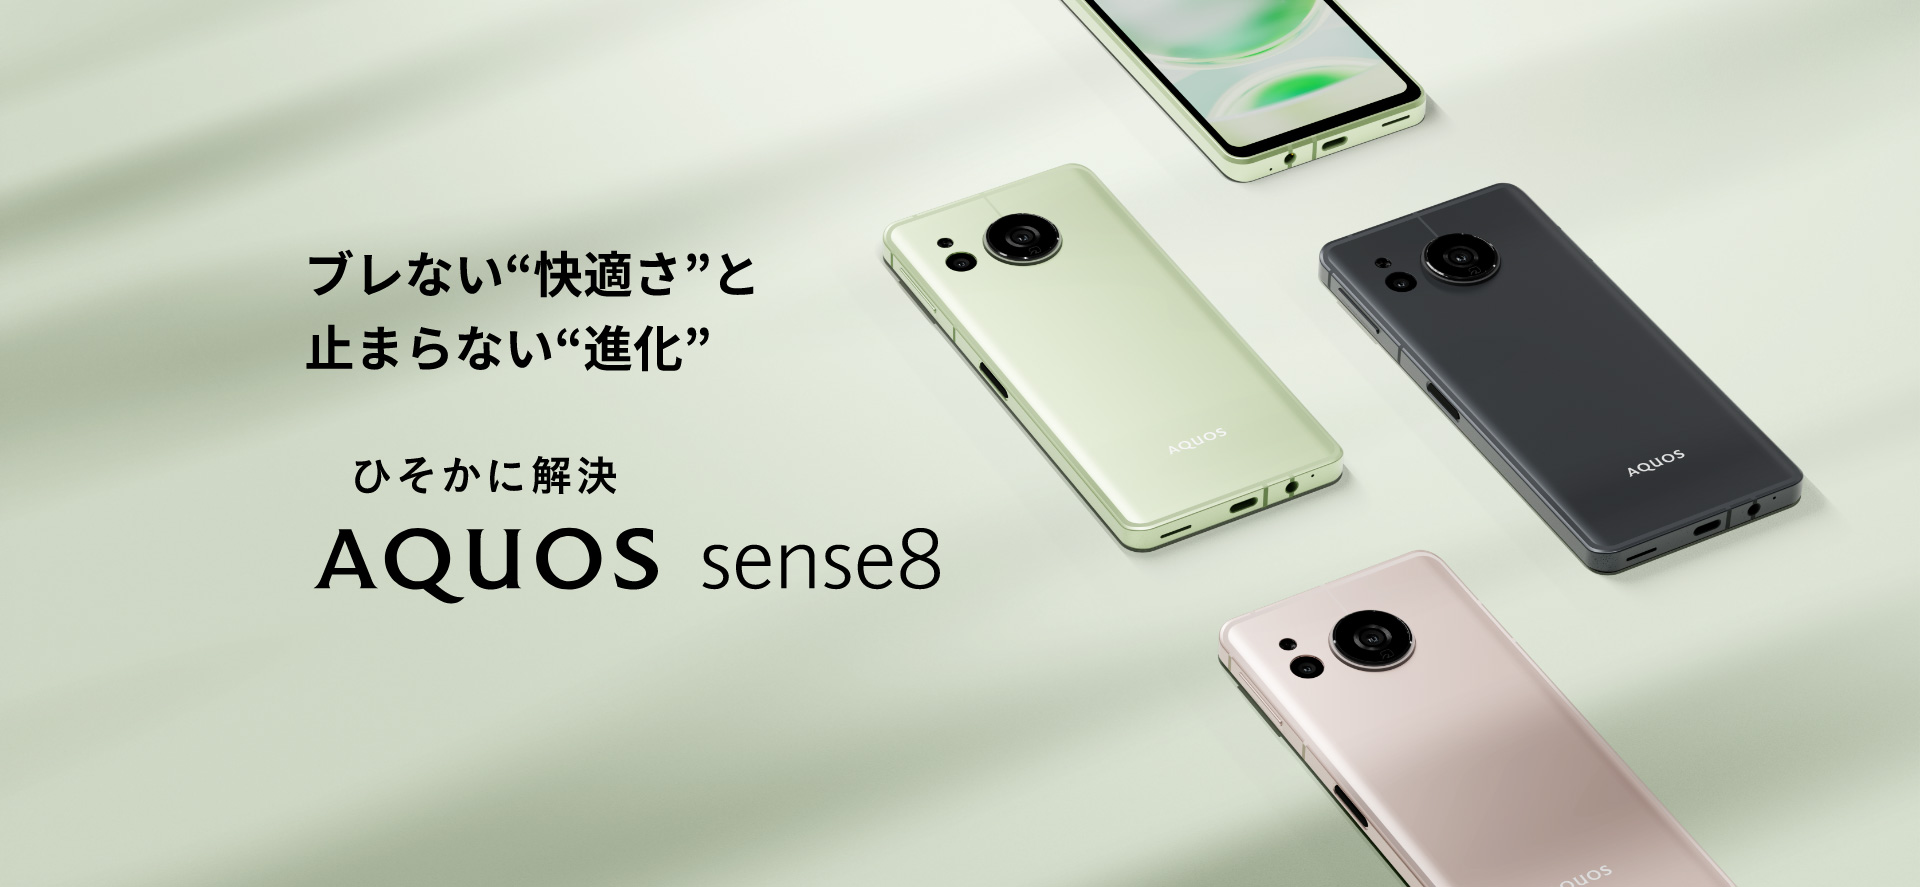  Анонс Sharp Aquos Sense 8: компактный средний смартфон в металле Другие устройства  - anons_sharp_aquos_sense_8_kompaktnyj_serednak_s_ois_v_metalle_picture2_0